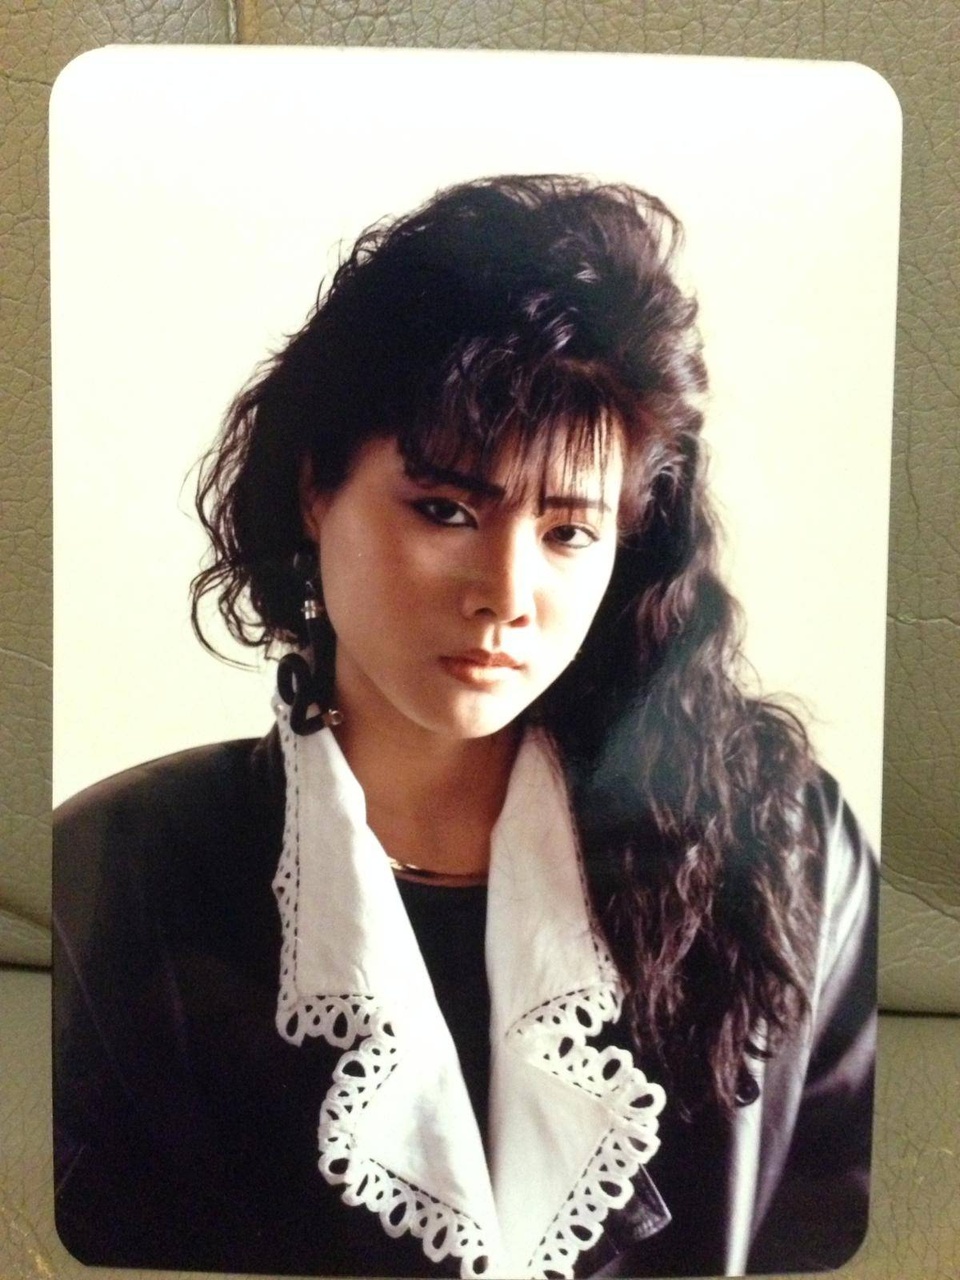 1989年1月影樓作品。化妝、髮型、服裝都是當年時尚。 (Credit Johnny Cheung)